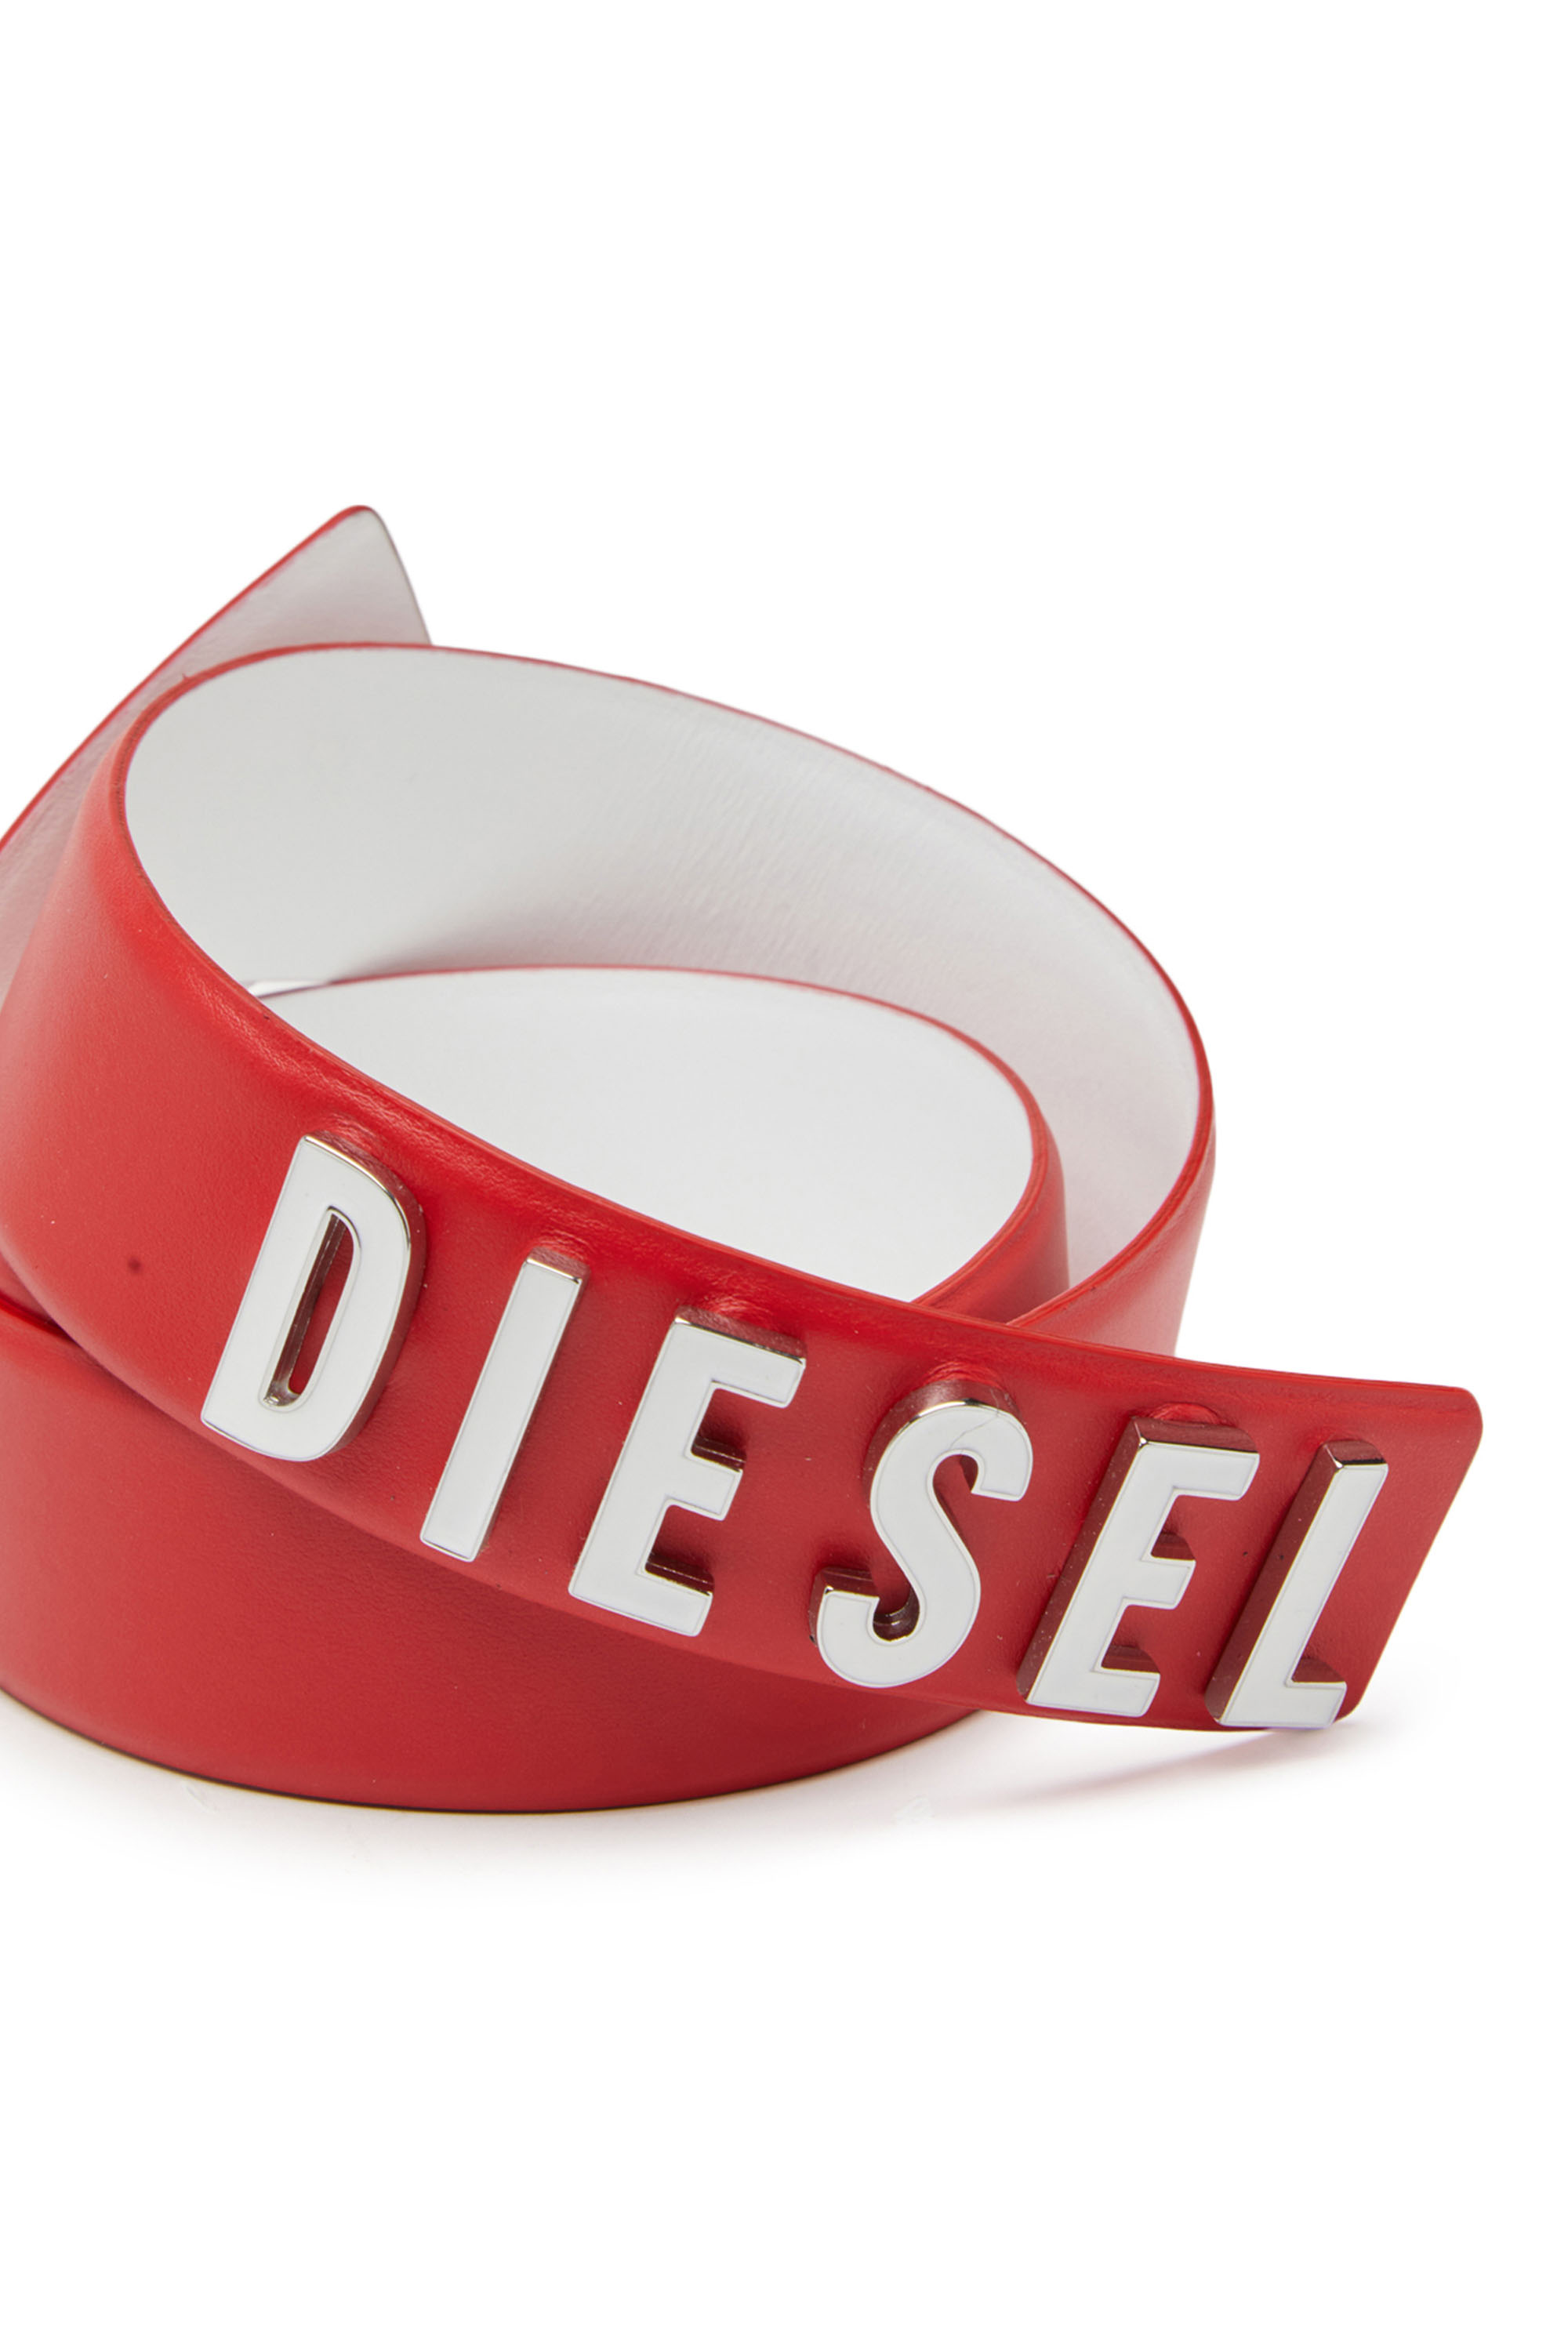 Diesel - B-LETTERS B, Rojo - Image 3